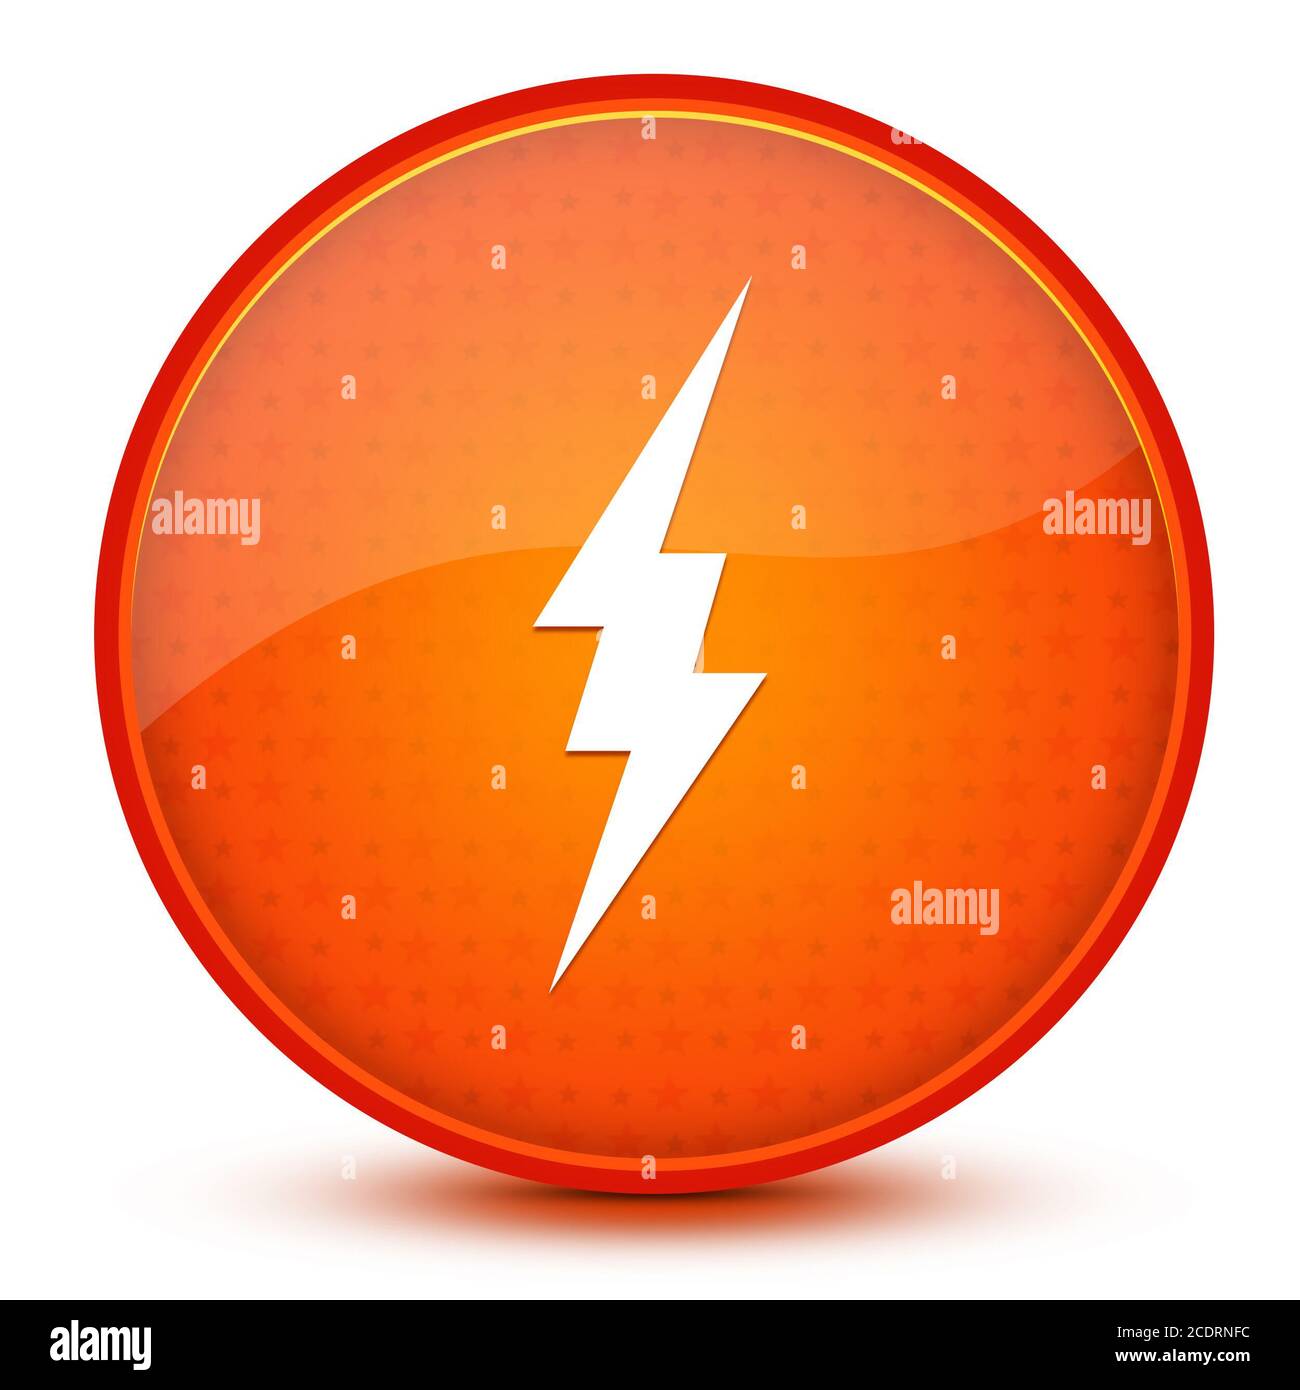 Icona fulmine isolata su una stella lucida pulsante rotondo arancione illustrazione astratta Foto Stock